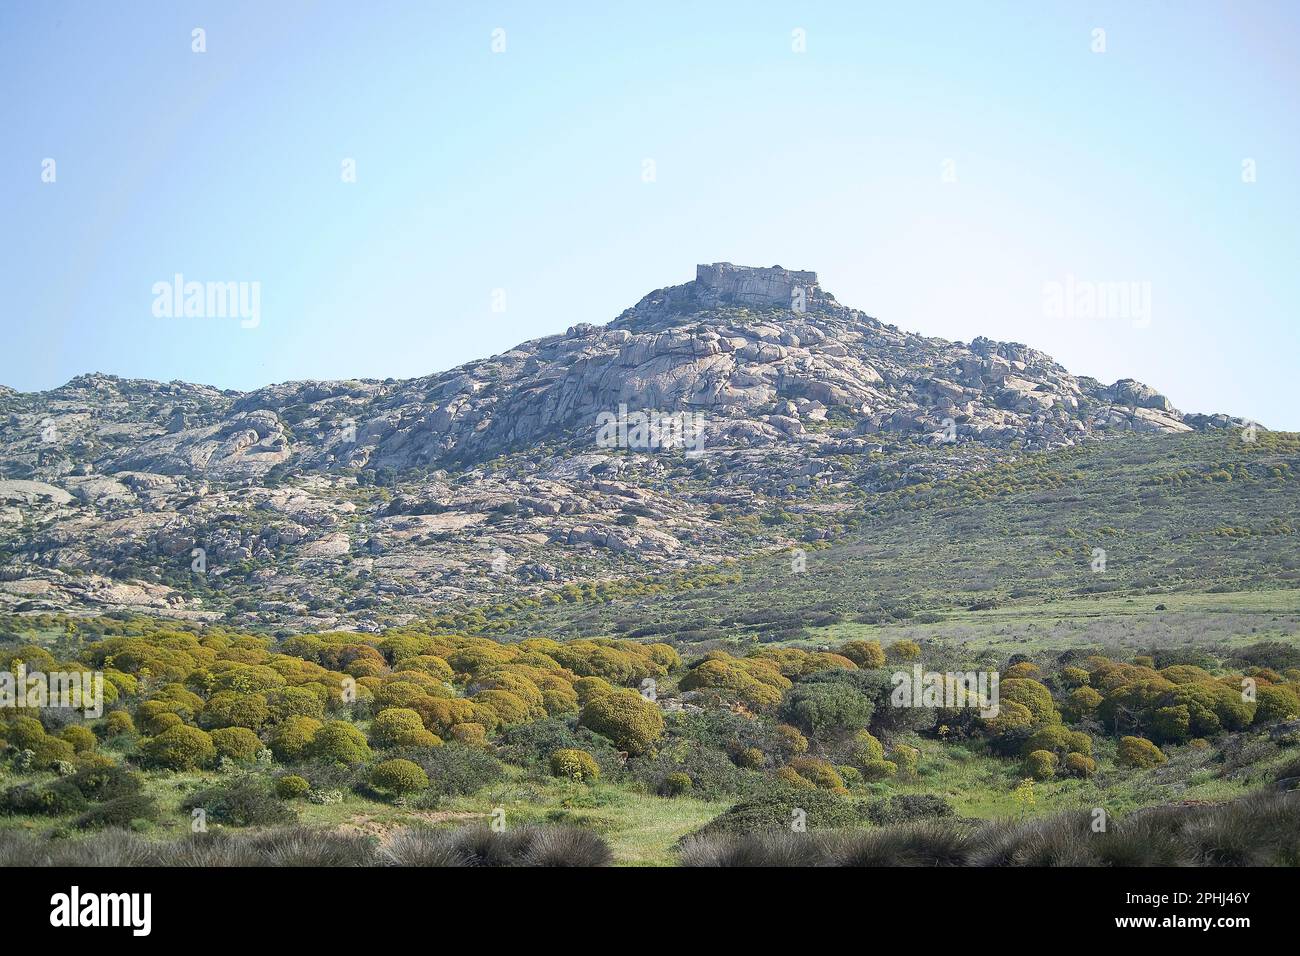 Paesaggio dell'Asinara nei pressi di Santa Maria, caratterizzato da euforbia (euphorbia arborea).The mediterranean shrubby of the island, Castellaccio Stock Photo